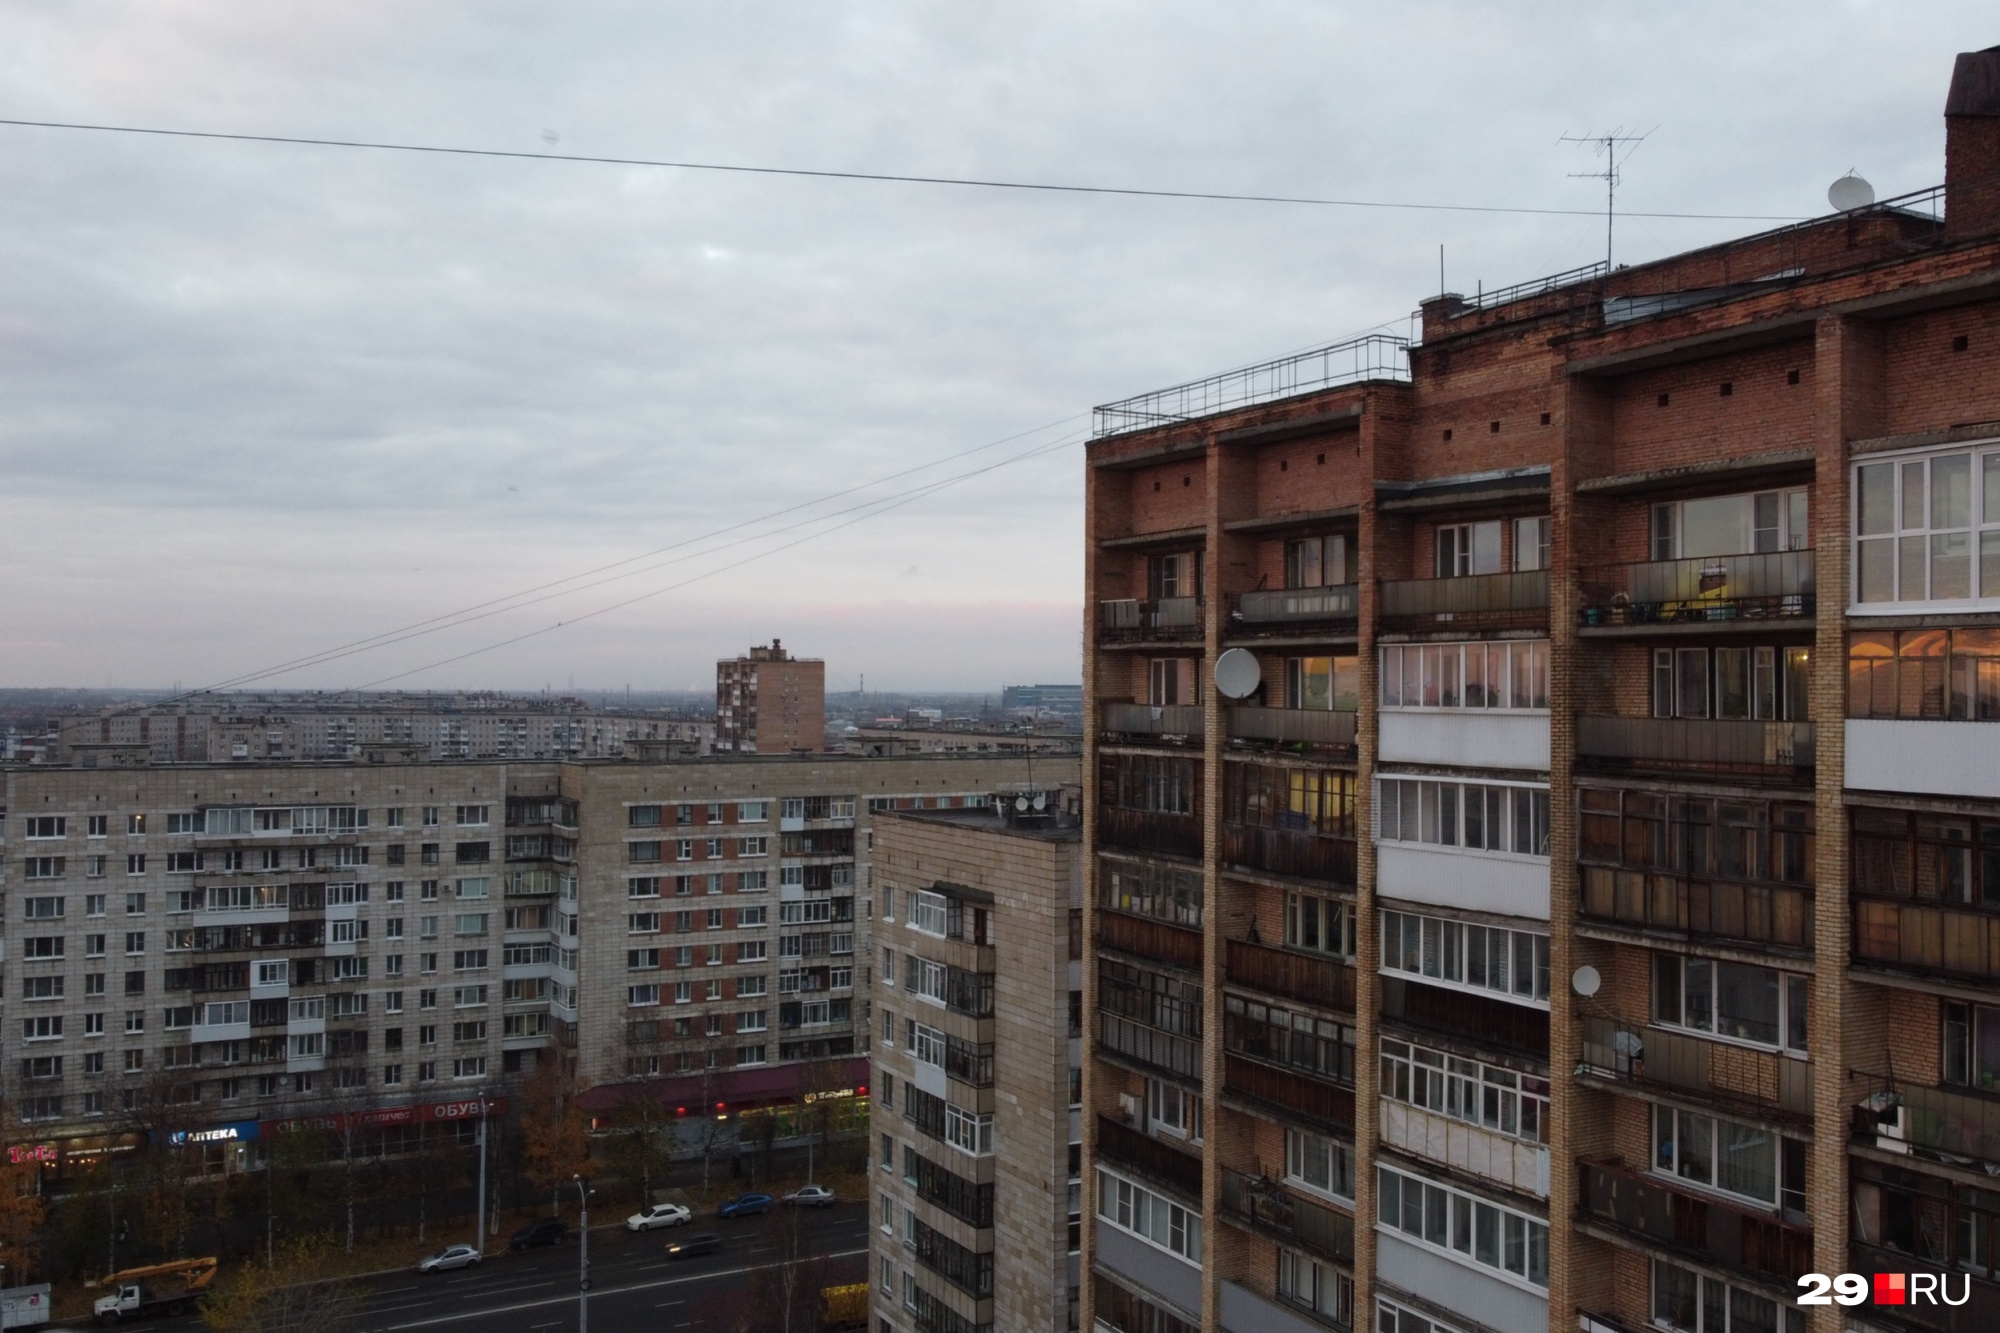 Многие жители Архангельска стремятся купить жилье во вторичке: кто-то — из-за цены, а кто-то — из-за недоверия к качеству новостроя